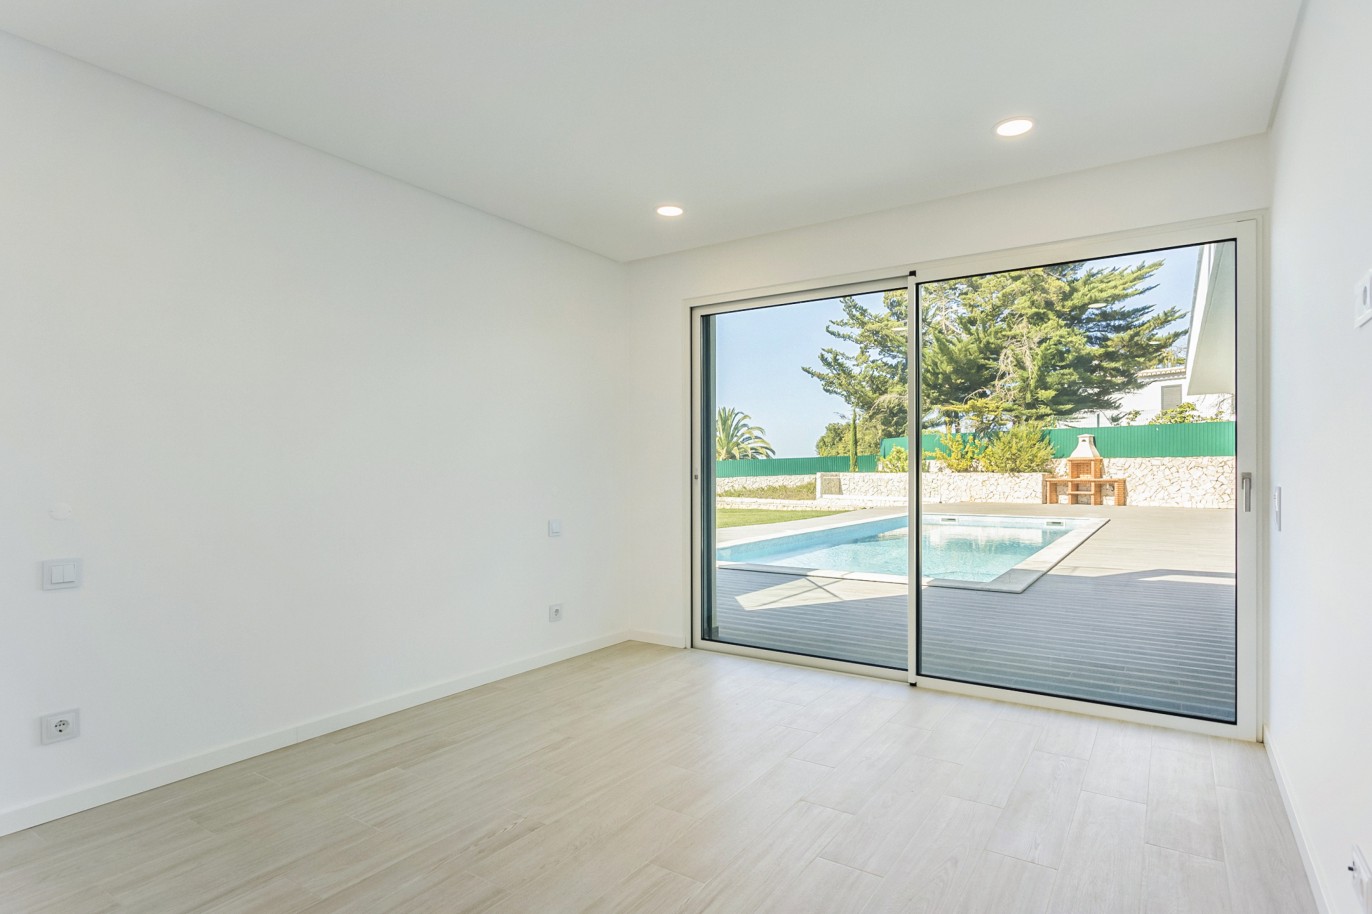 4 Bedroom Villa, with swimming pool, for sale, in Ferragudo, Algarve_222731